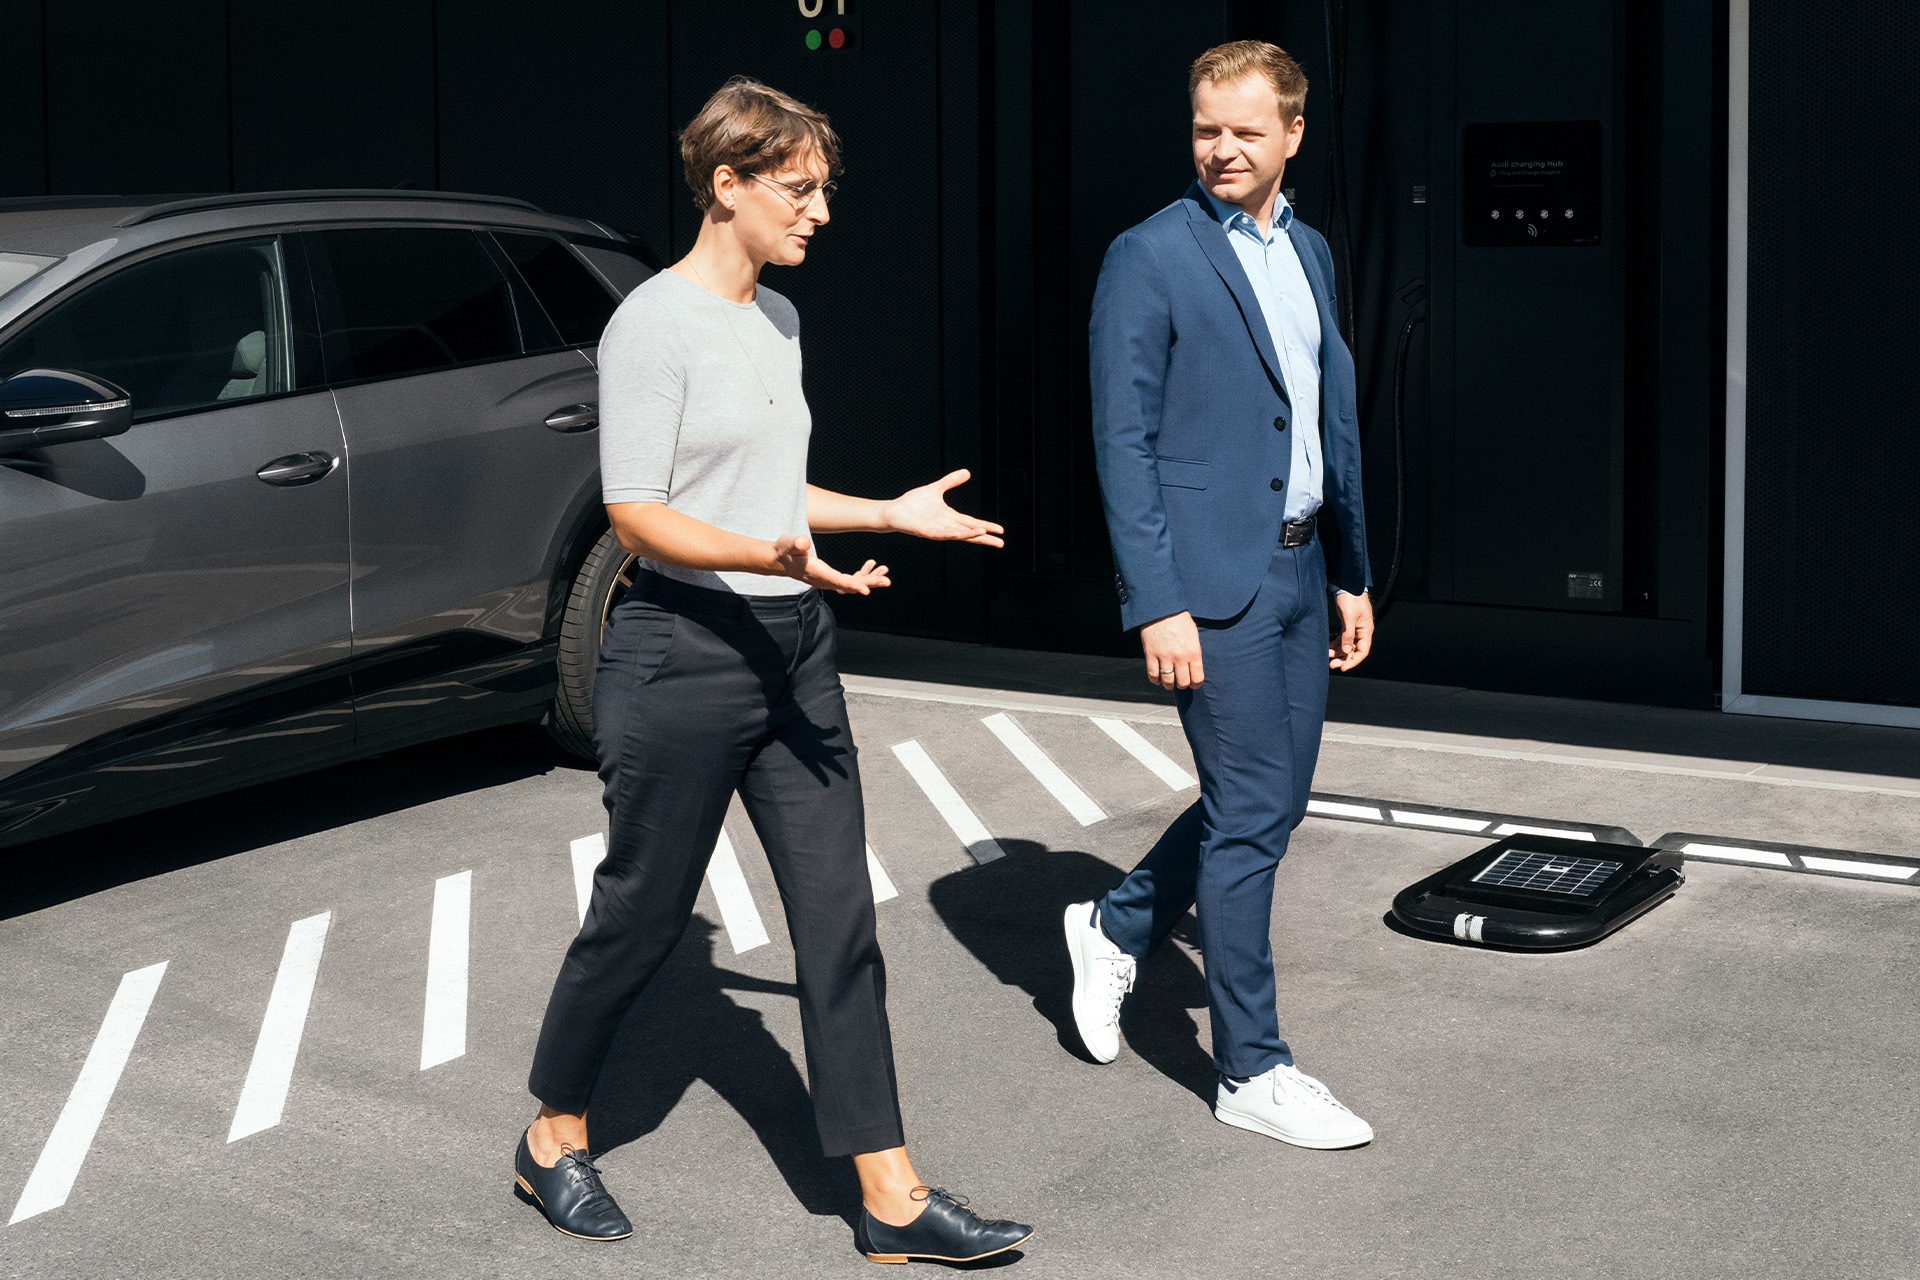 Strokovnjaka za trajnostni razvoj dr. Johanna Klewitz in Malte Vömel se sprehajata po parkirišču pred polnilnim središčem Audi charging hub v Nürnbergu.